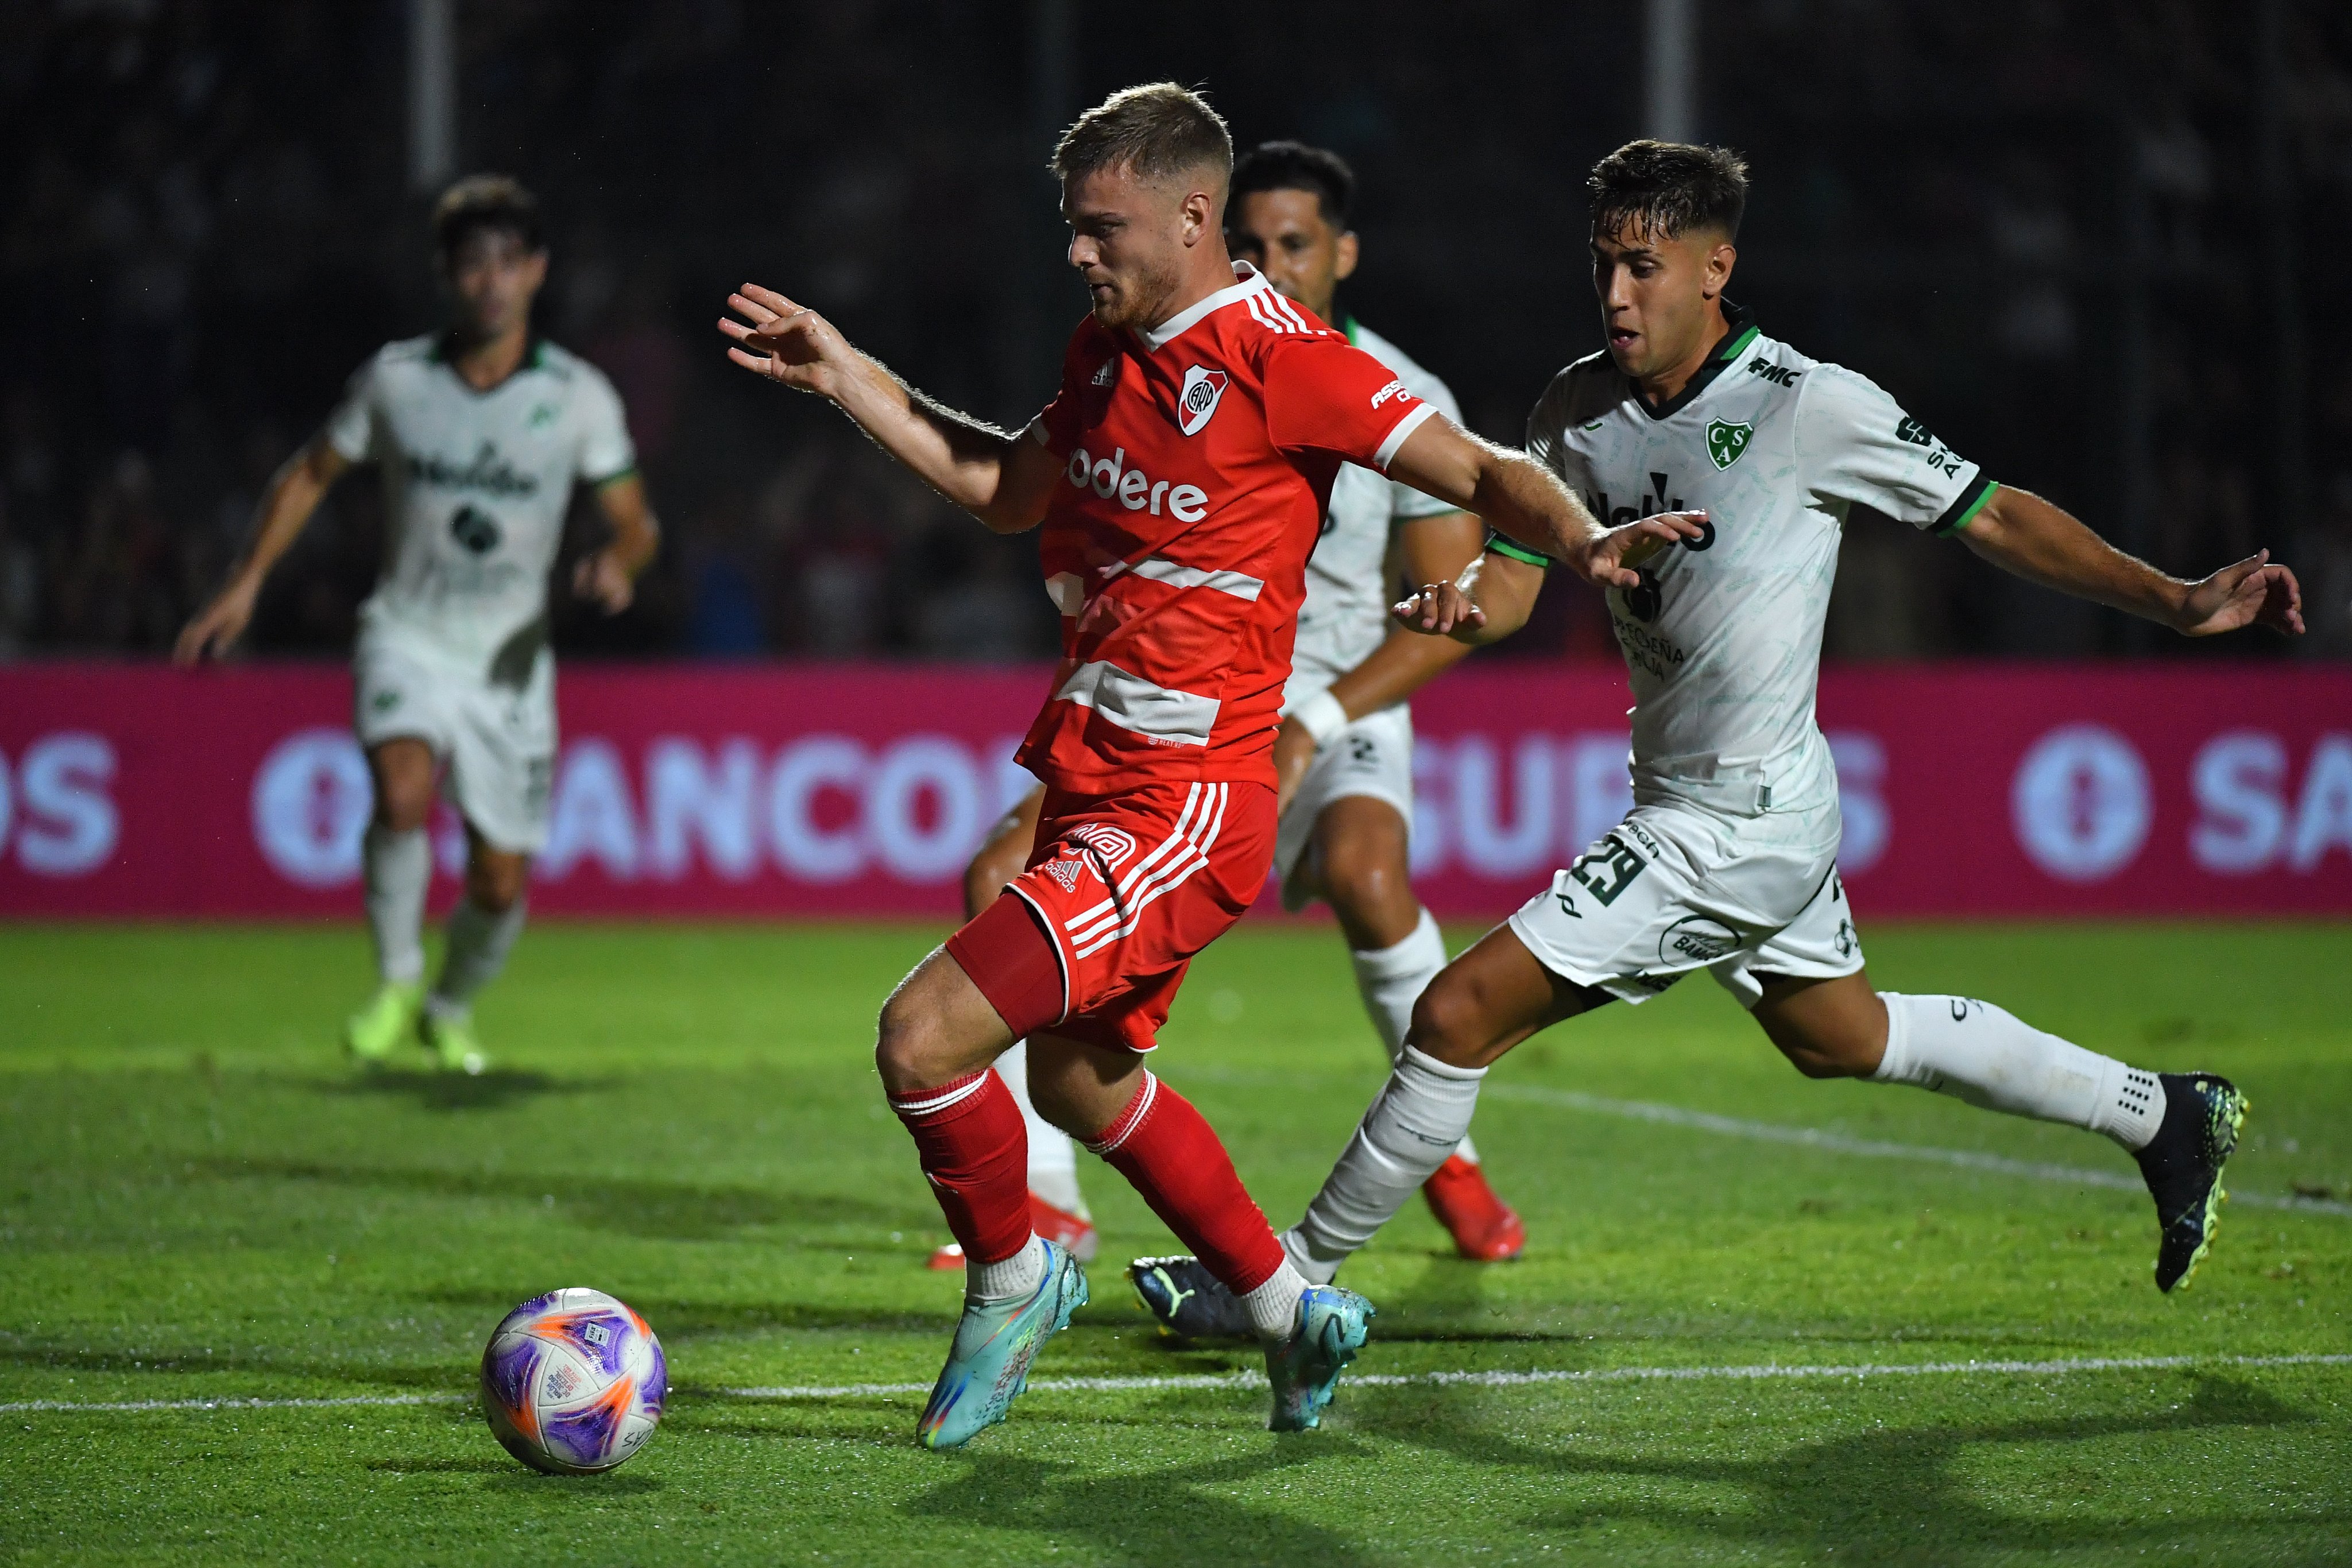 Sarmiento 0-2 River Plate: resumen, goles y resultado